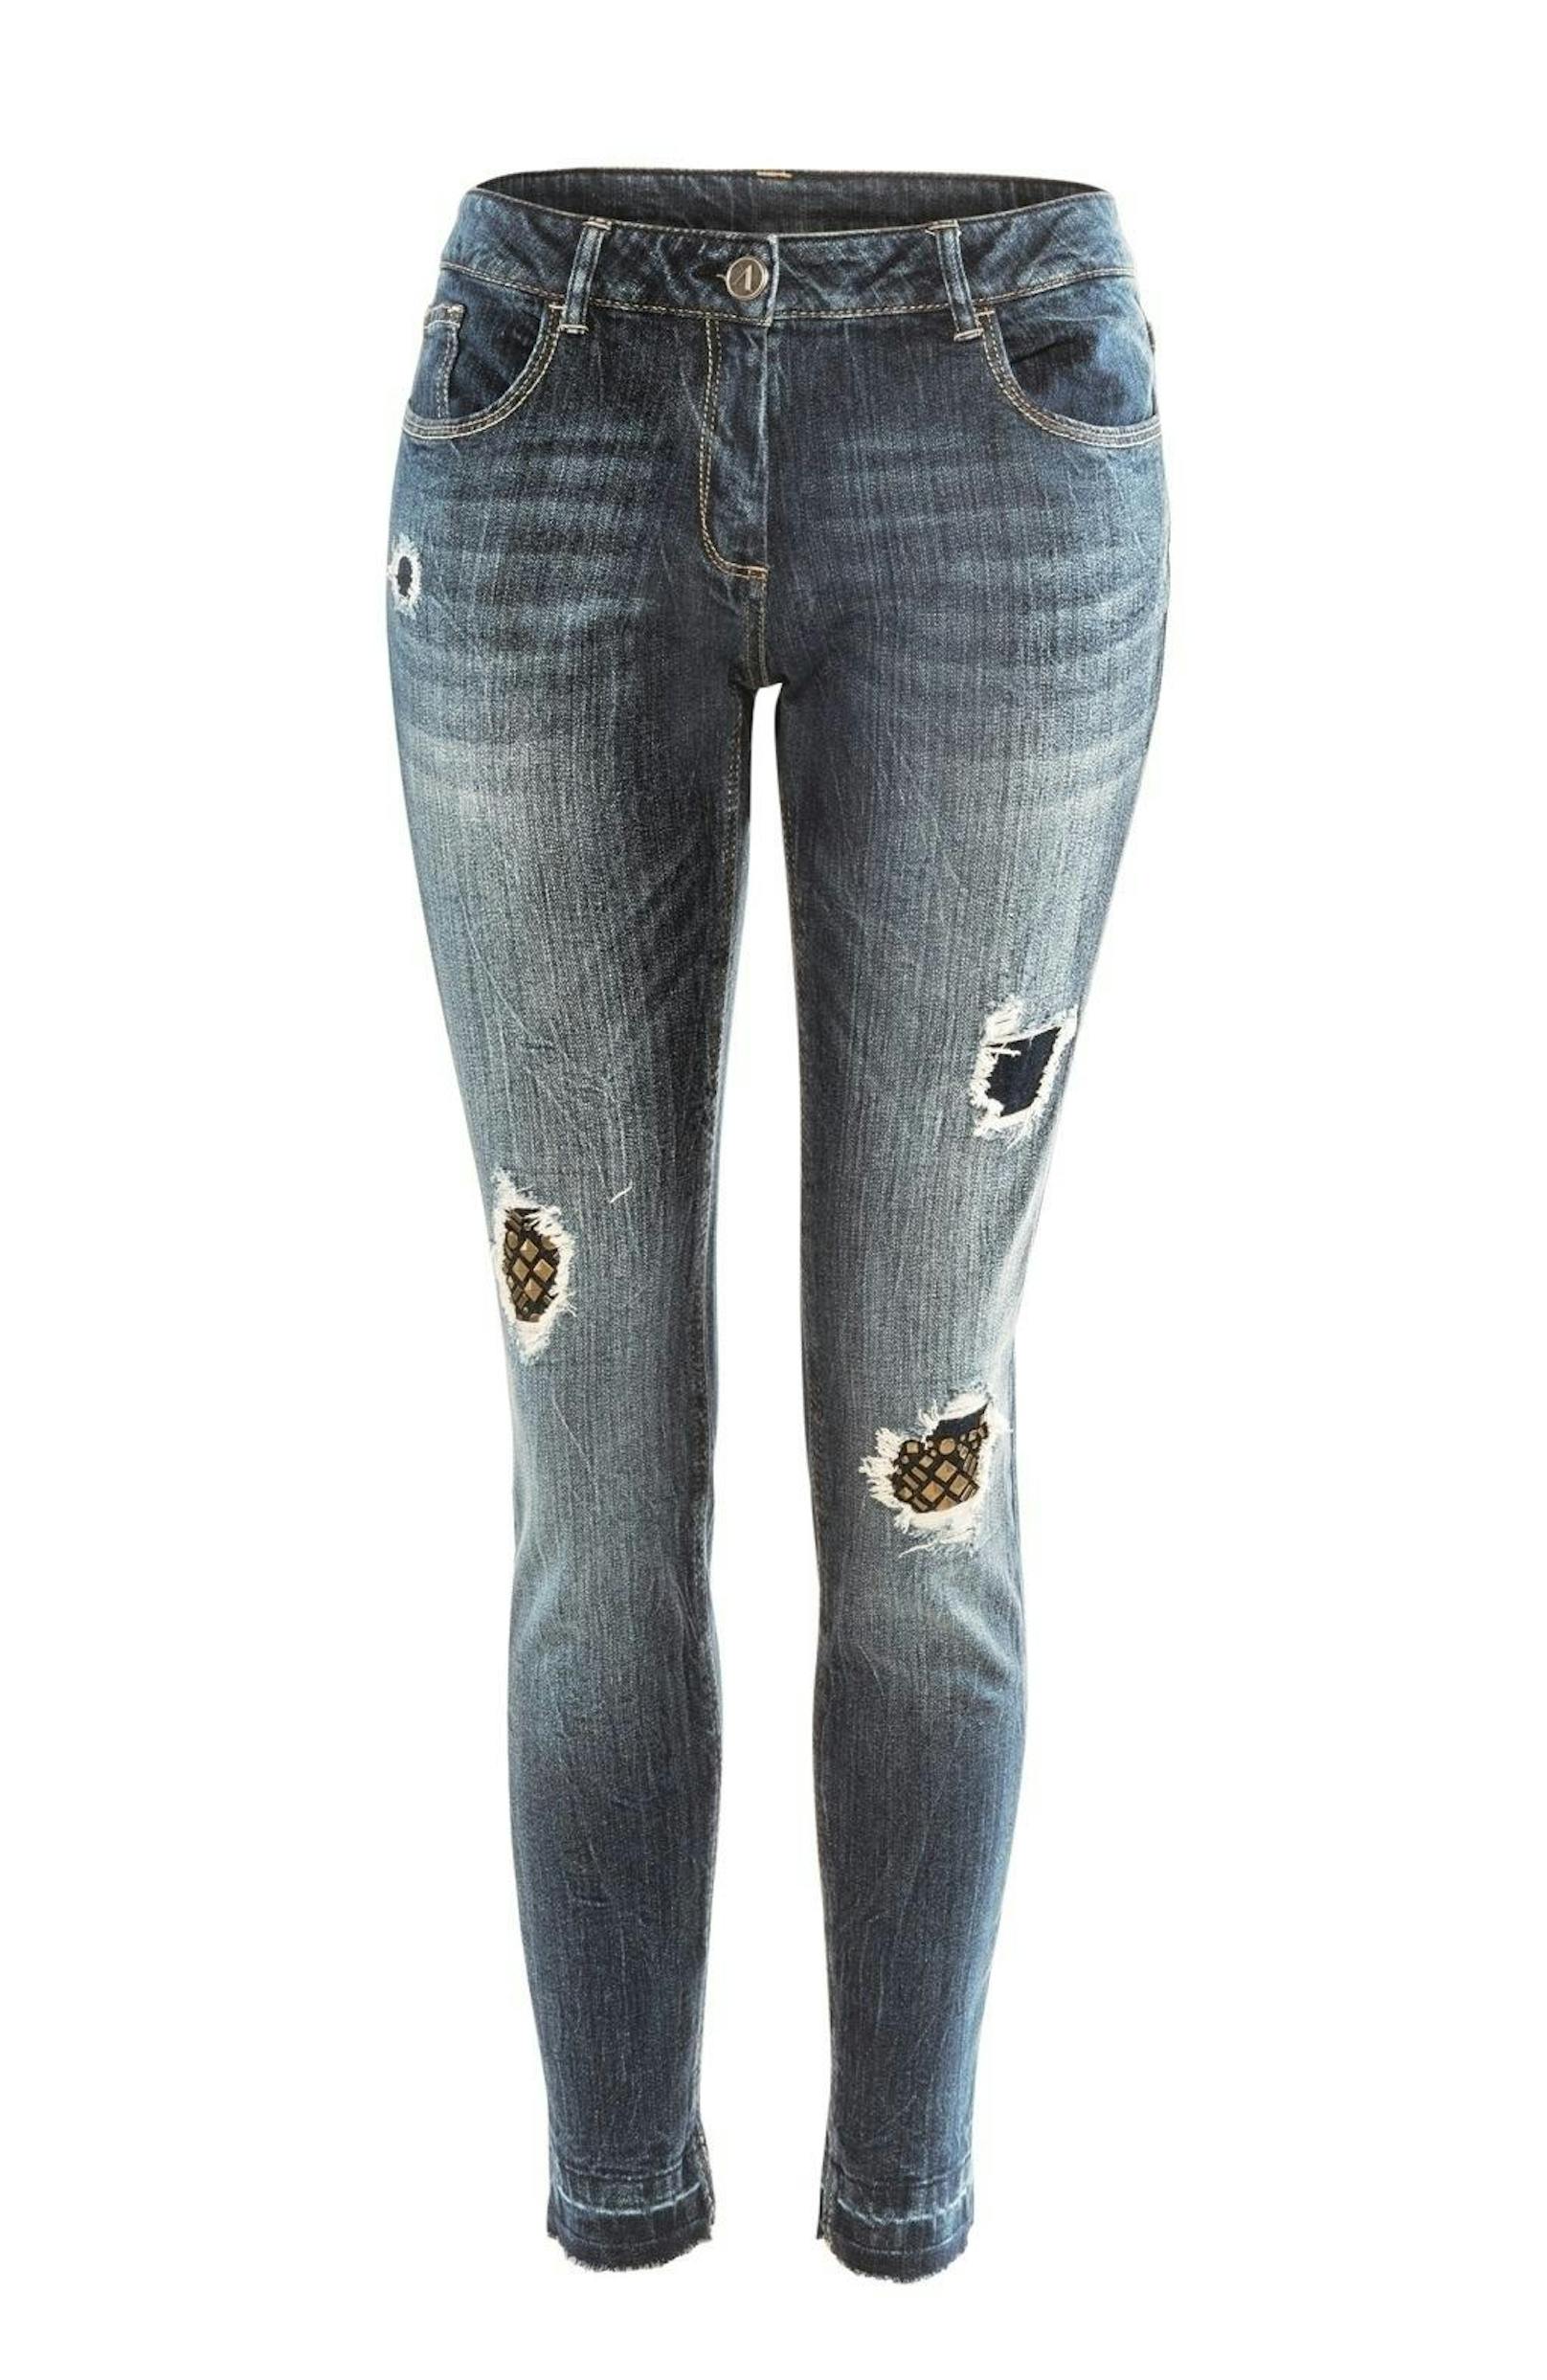 Damen-Jeans in Schwarz, Bordeaux, Mittelblau oder Blau, Große 36 bis 44, um 14,99 Euro